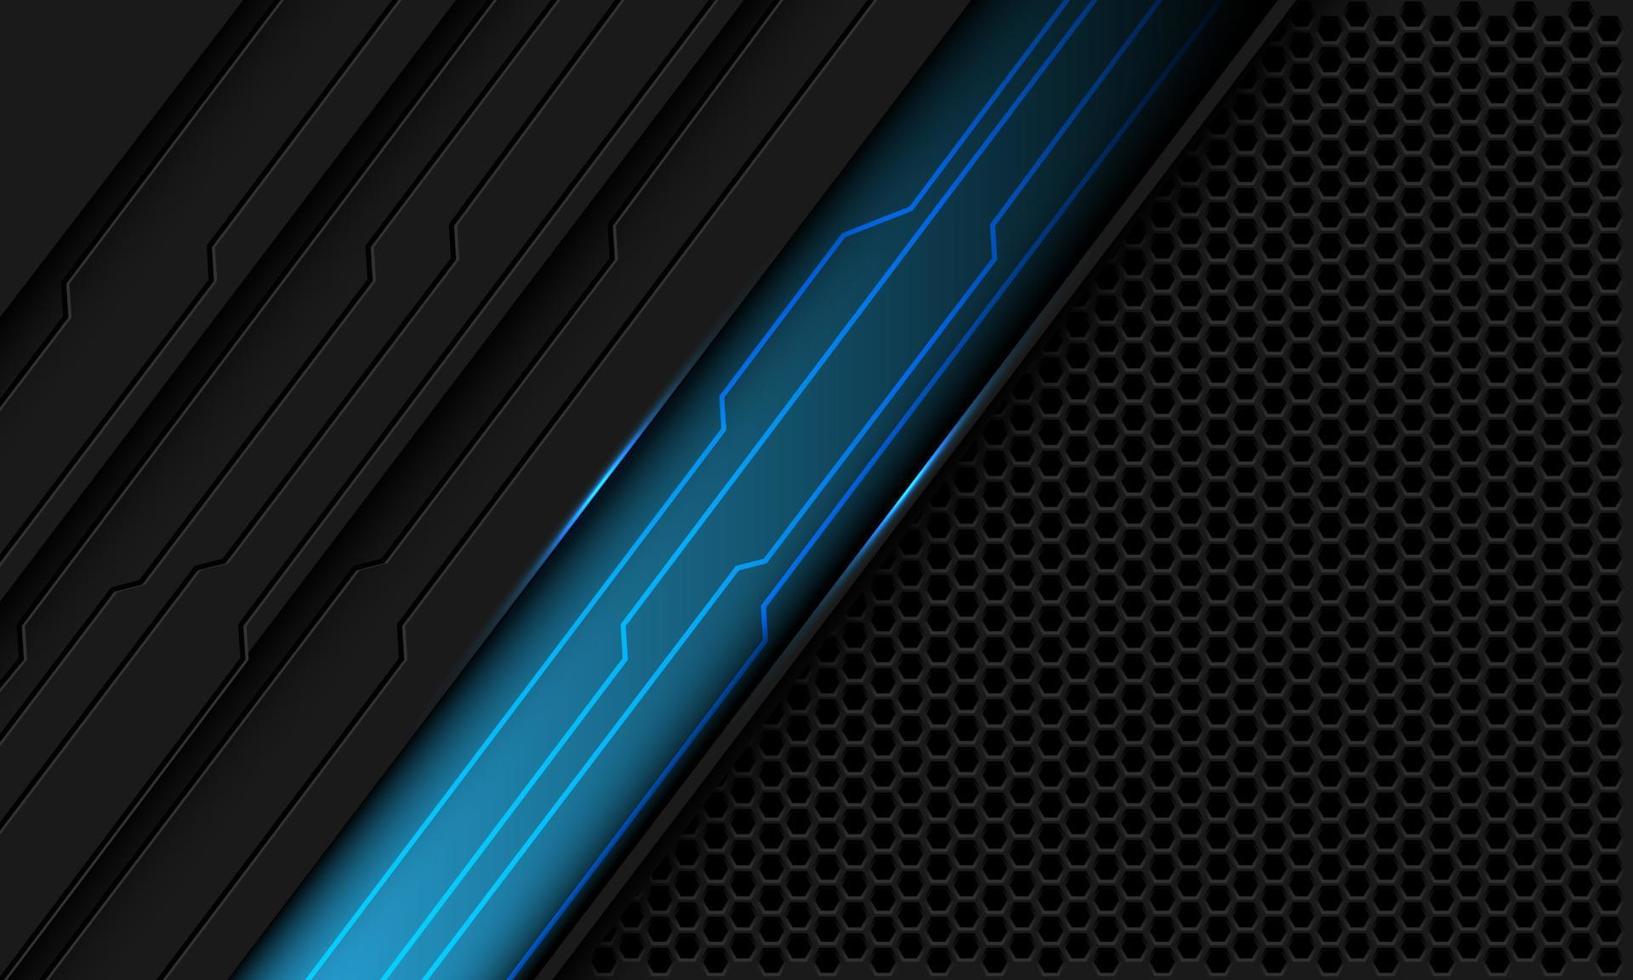 abstrait ligne bleue circuit noir sur gris métallique hexagone maille conception géométrique technologie ultramoderne futuriste fond vecteur